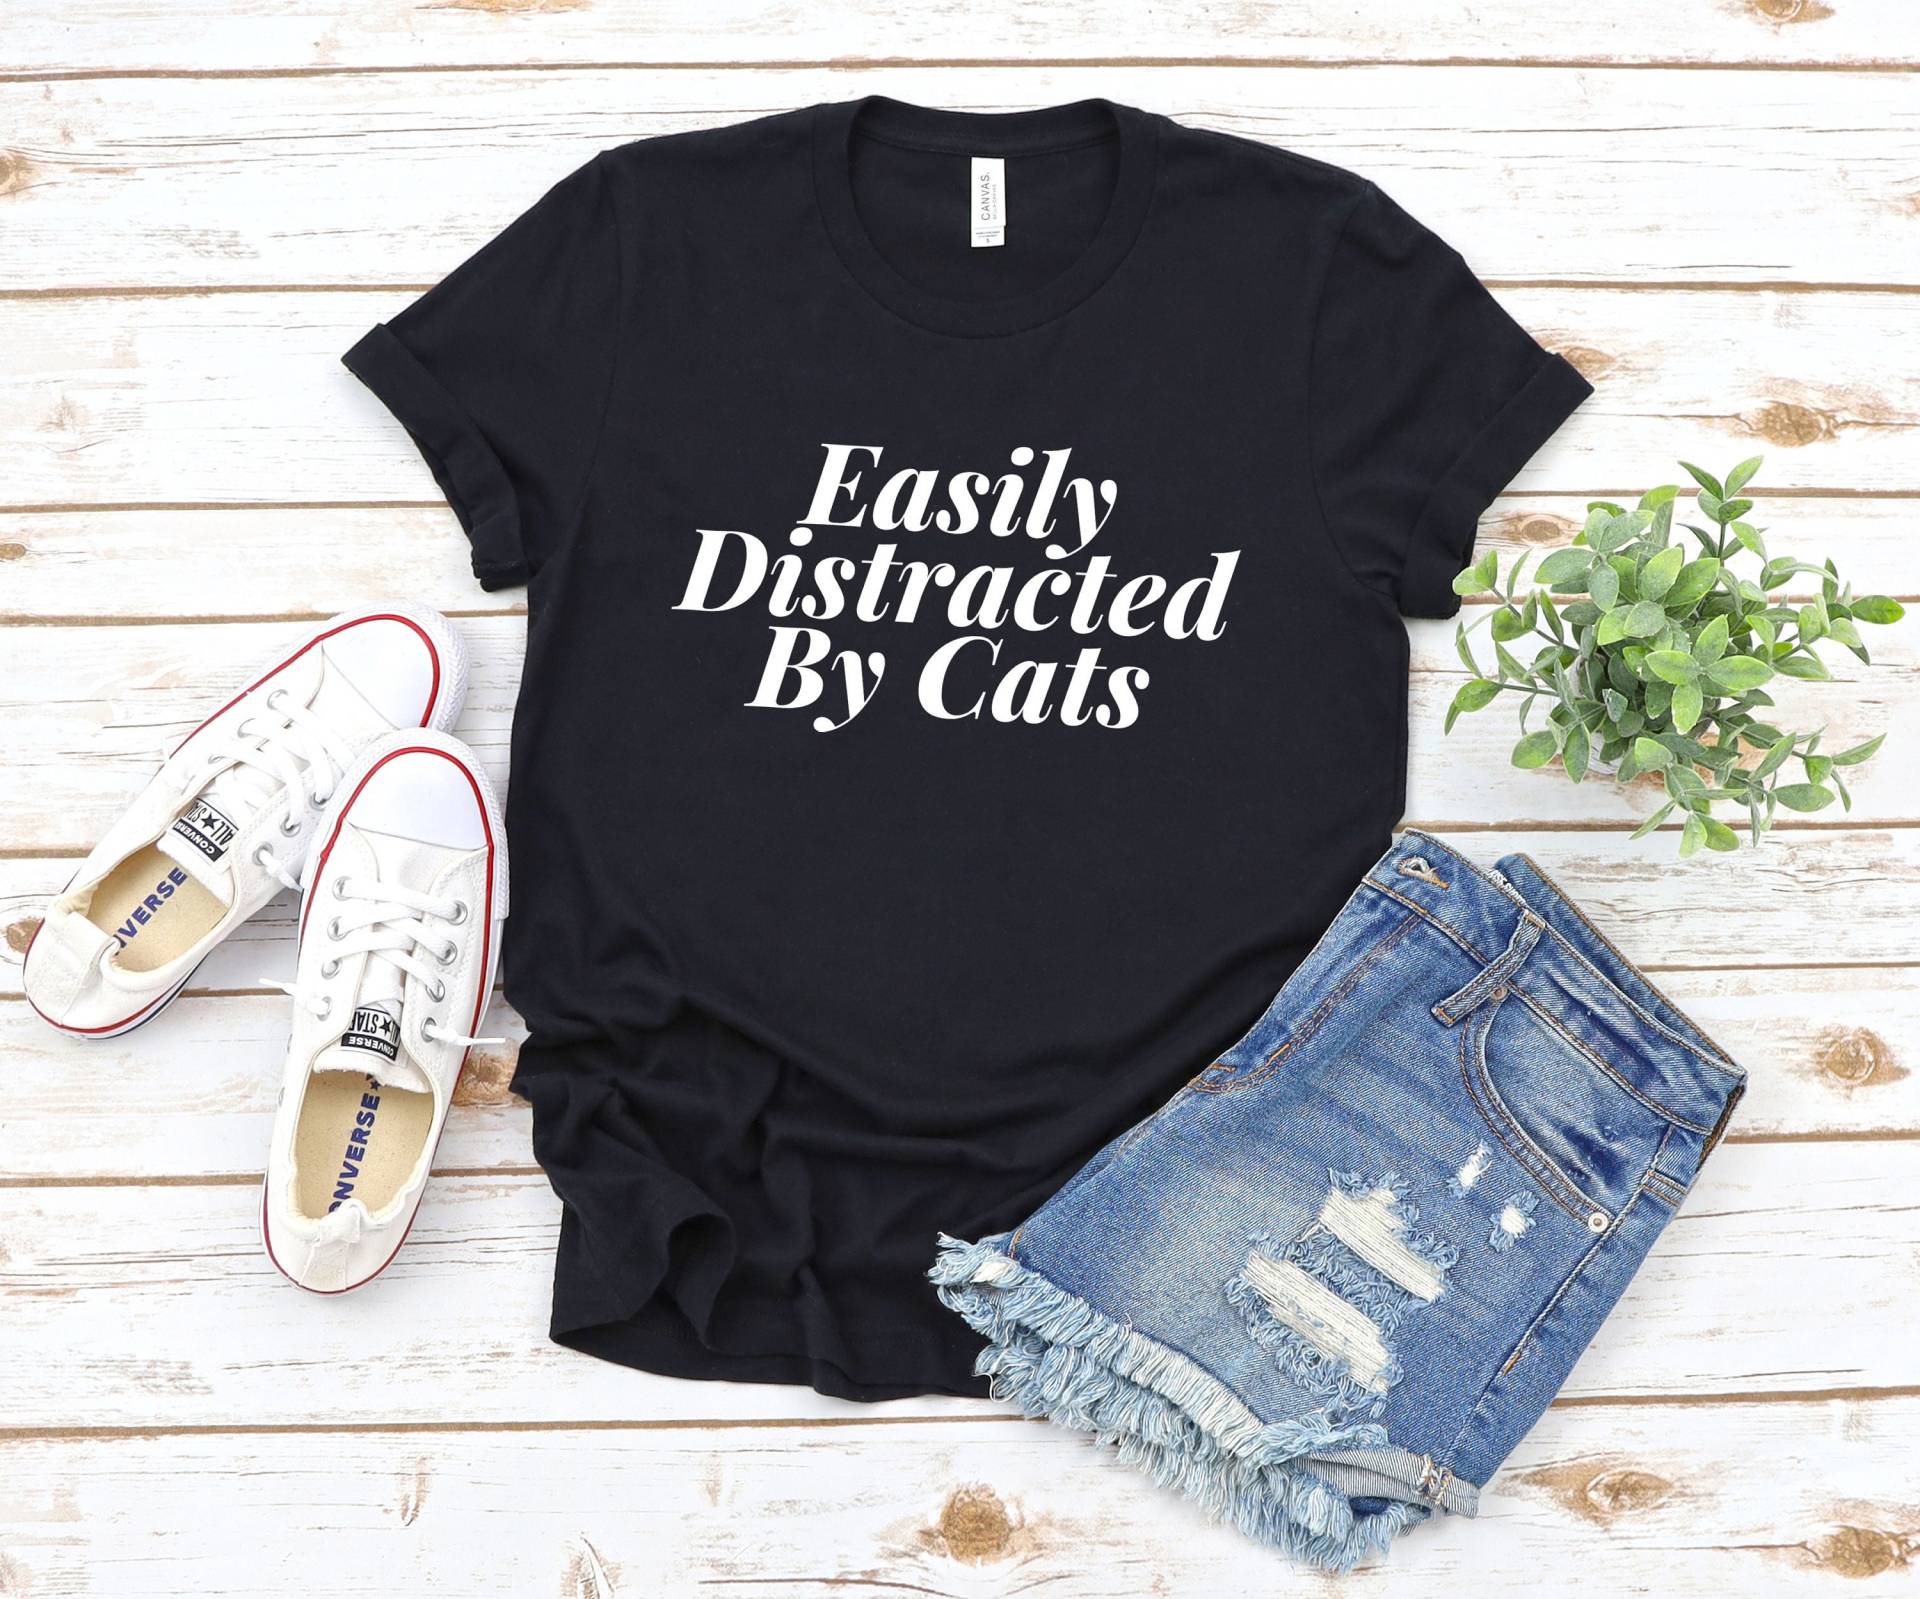 Katzen Mama Shirt, Verrückte Geschenk Für Mama, Haustier Liebhaber Lustige Katze Dame Shirt Leicht Abgelenkt Von von SimplyTraded